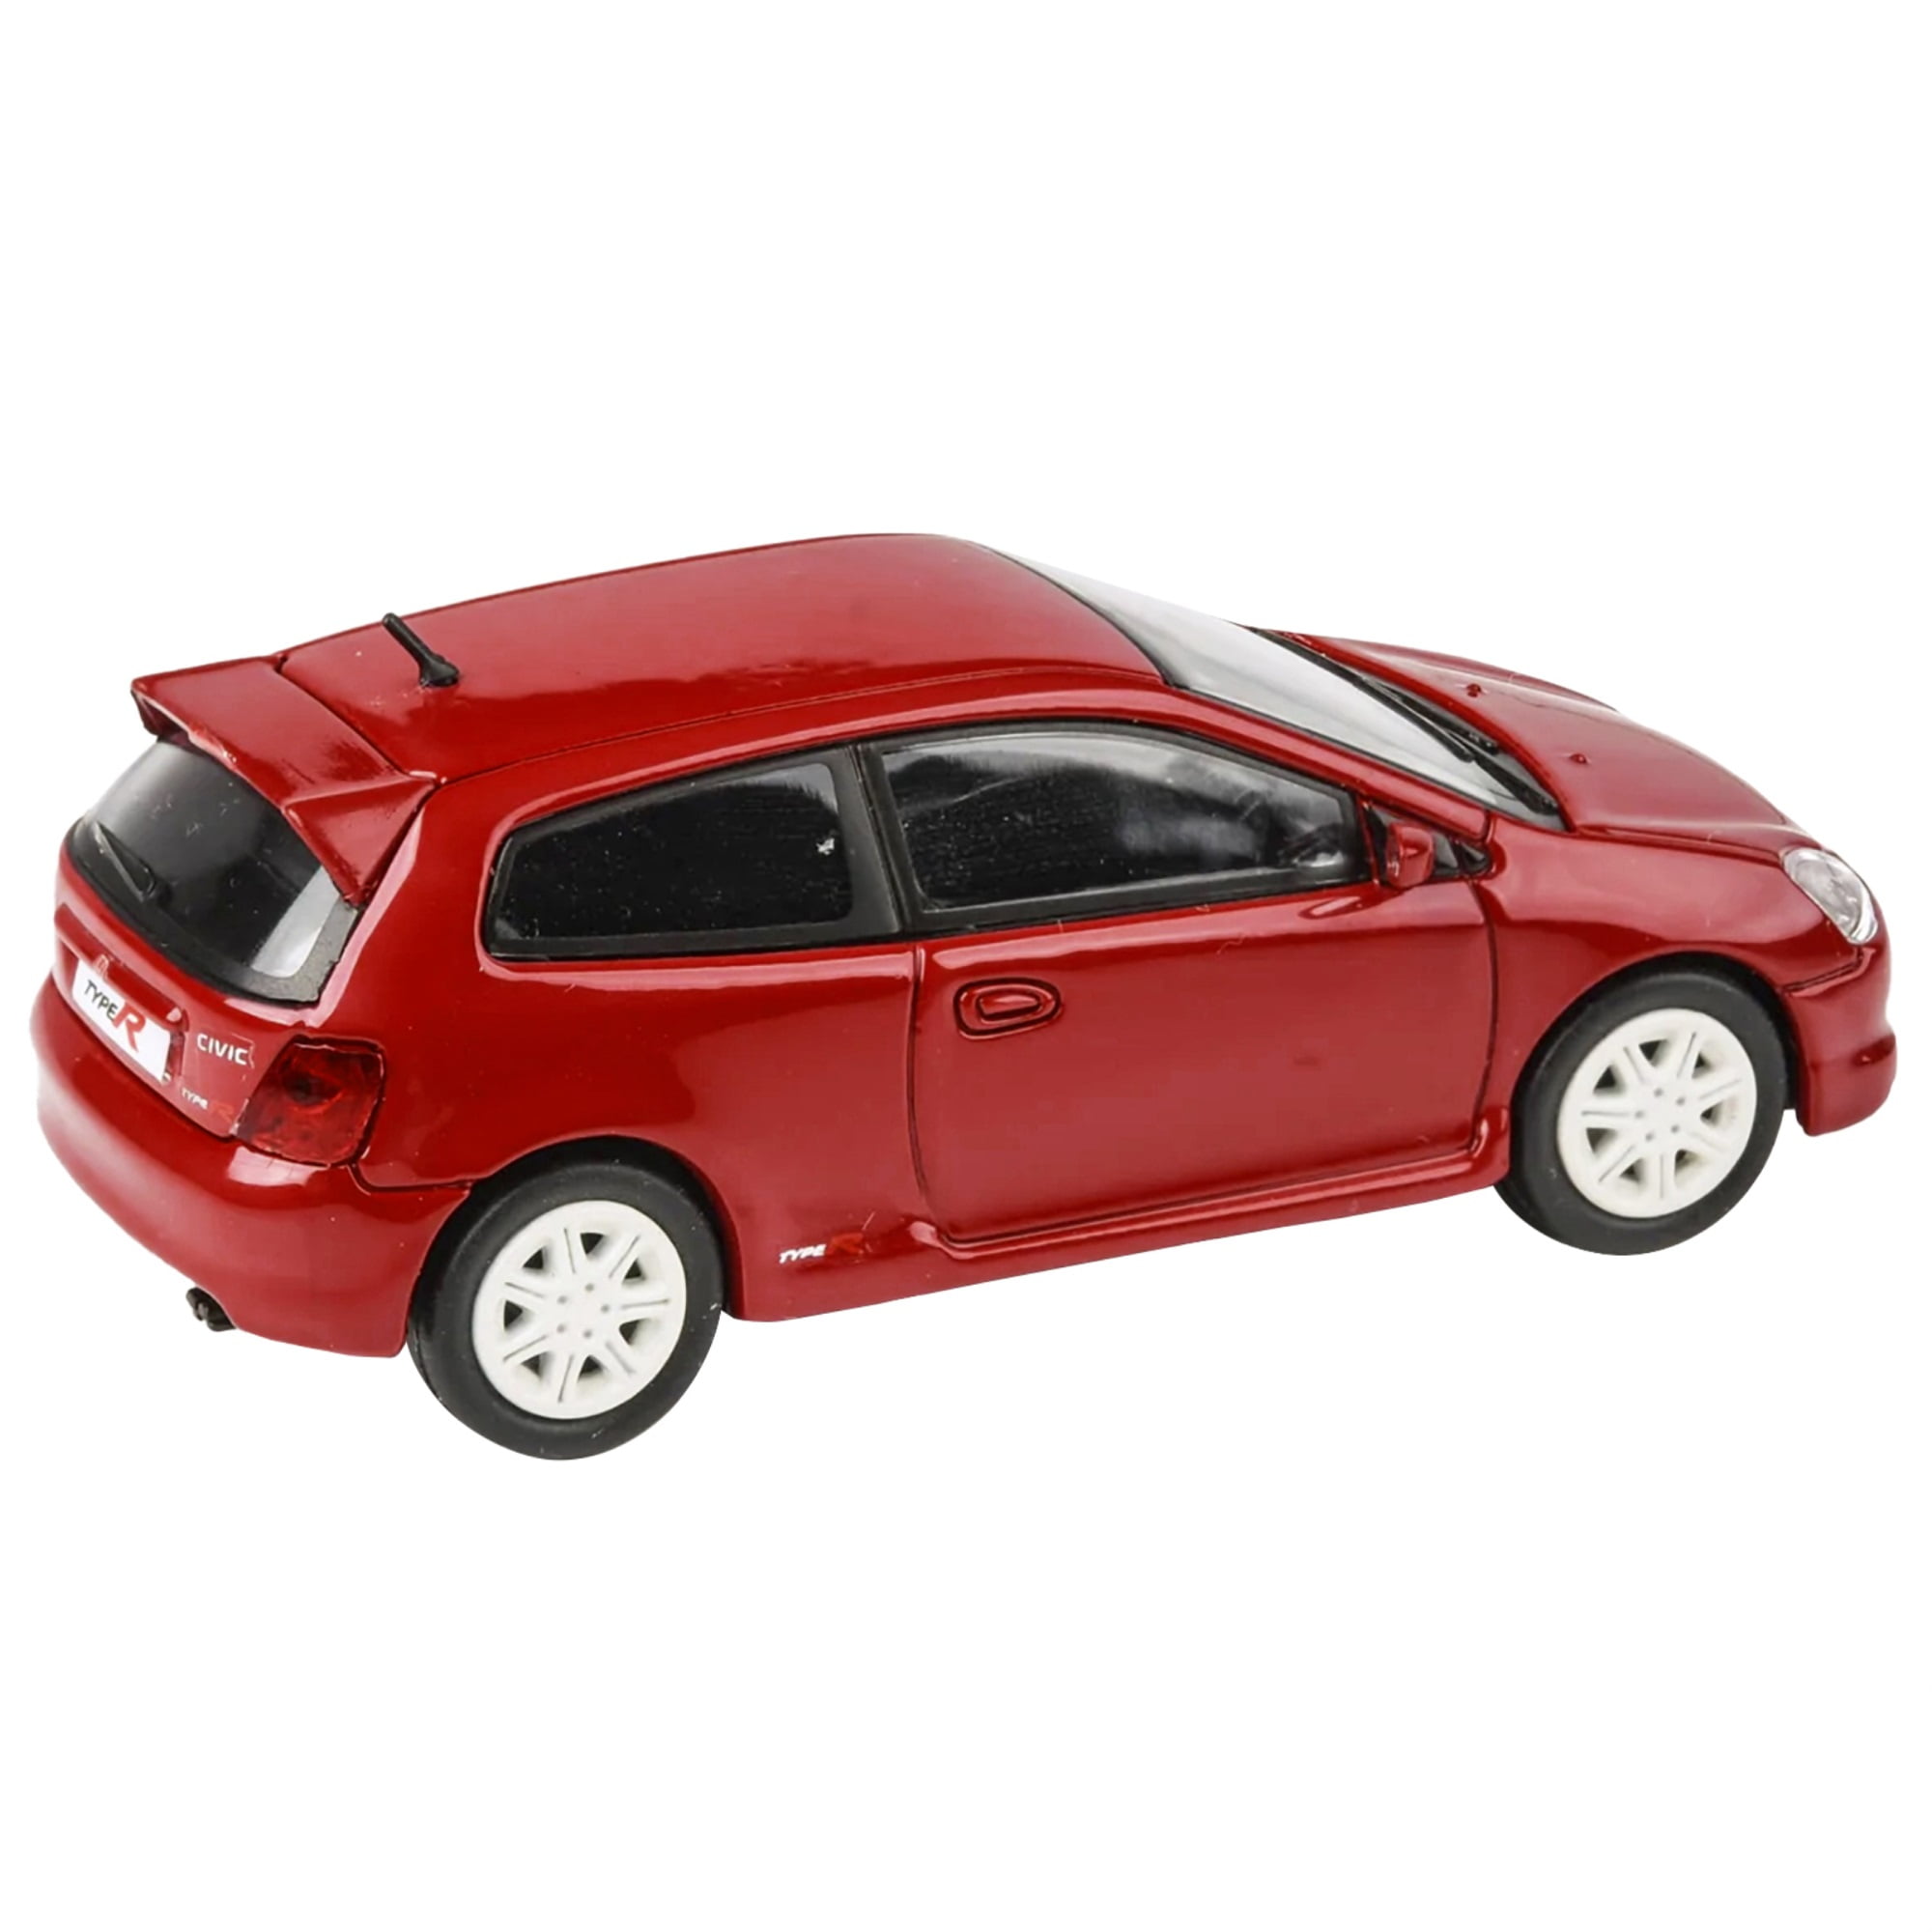 Miniature Car Model Honda Civic Type-r 1:32,red